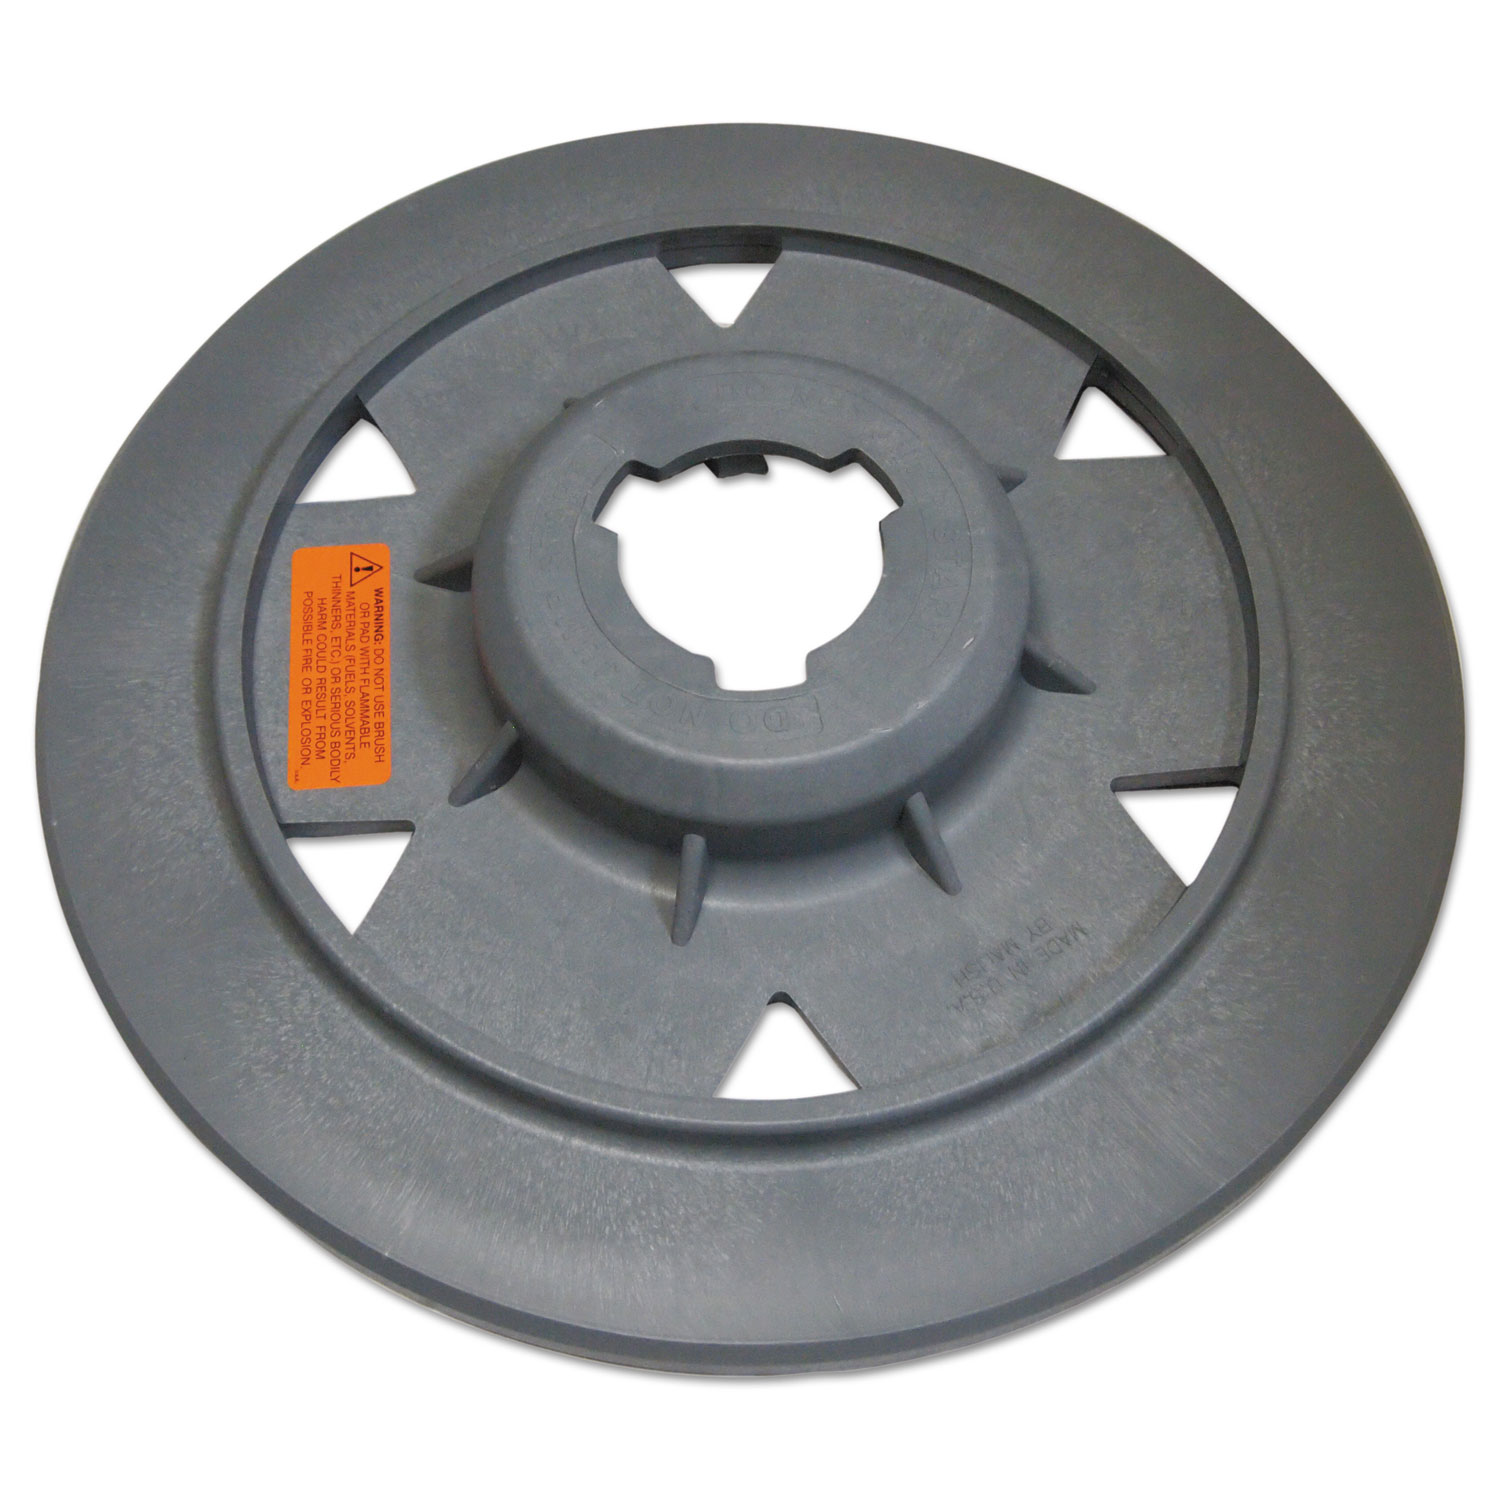  Mercury Floor Machines 2105-T Tri-Lock Plastic Pad Driver, 20 (MFM2105T) 